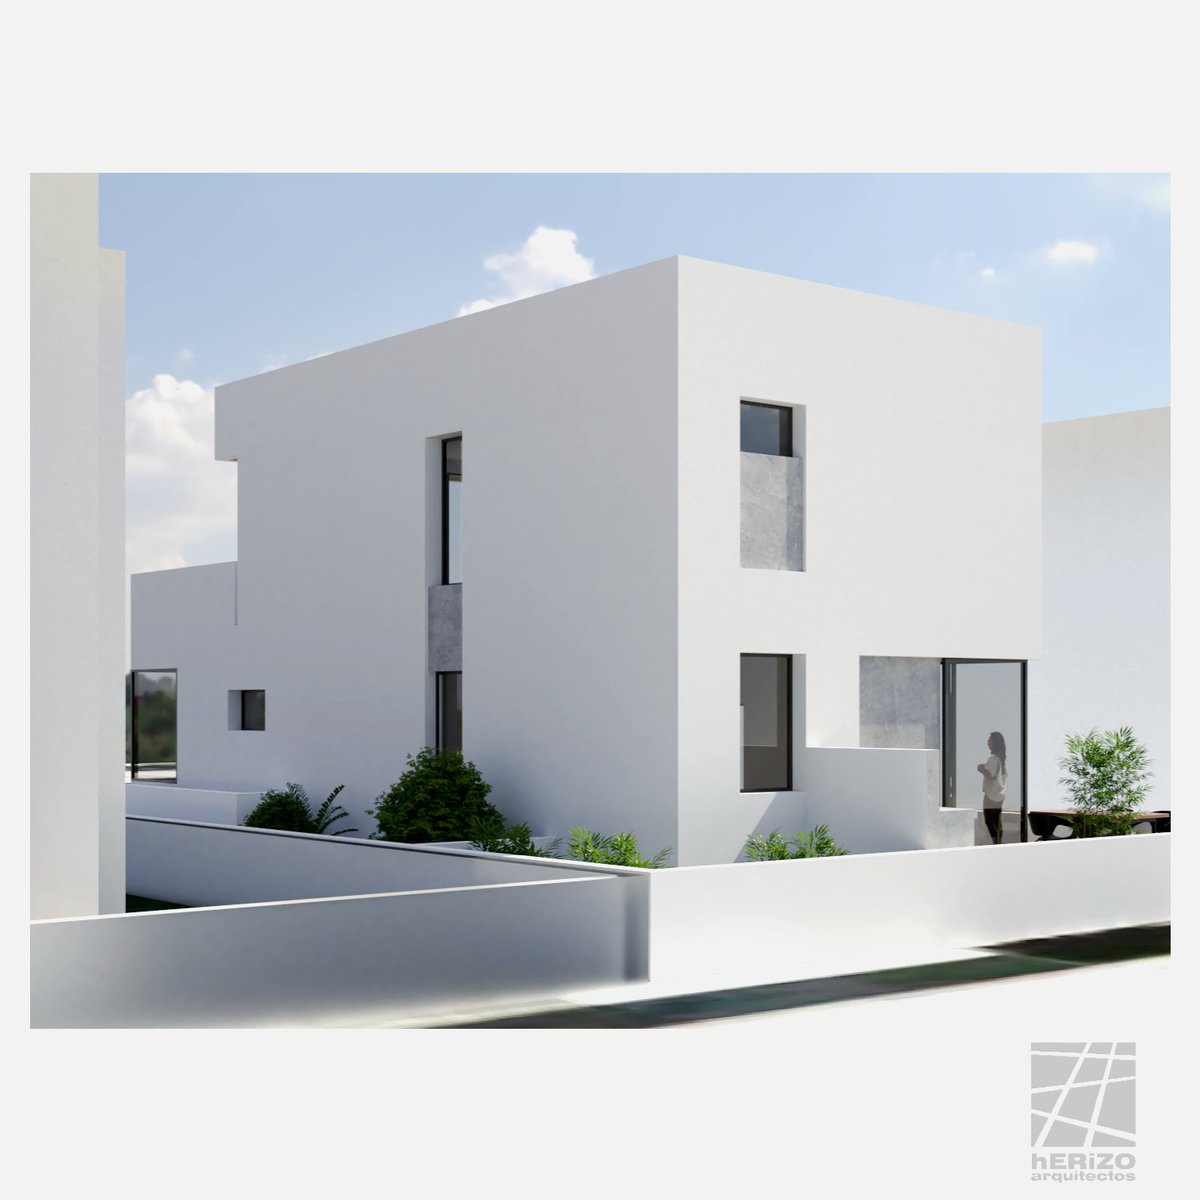 Proyecto entregado. Vivienda unifamiliar en Playa Honda.
Plantas y perspectivas.
#herizoarquitectos #proyectos #Lanzarote #vivienda #profesionalidad #sketchup #renderlovers #vrayrender #spanisharchitecture #architecture #arquitecturalanzarote #arquitecturablanca #home #chezmoi